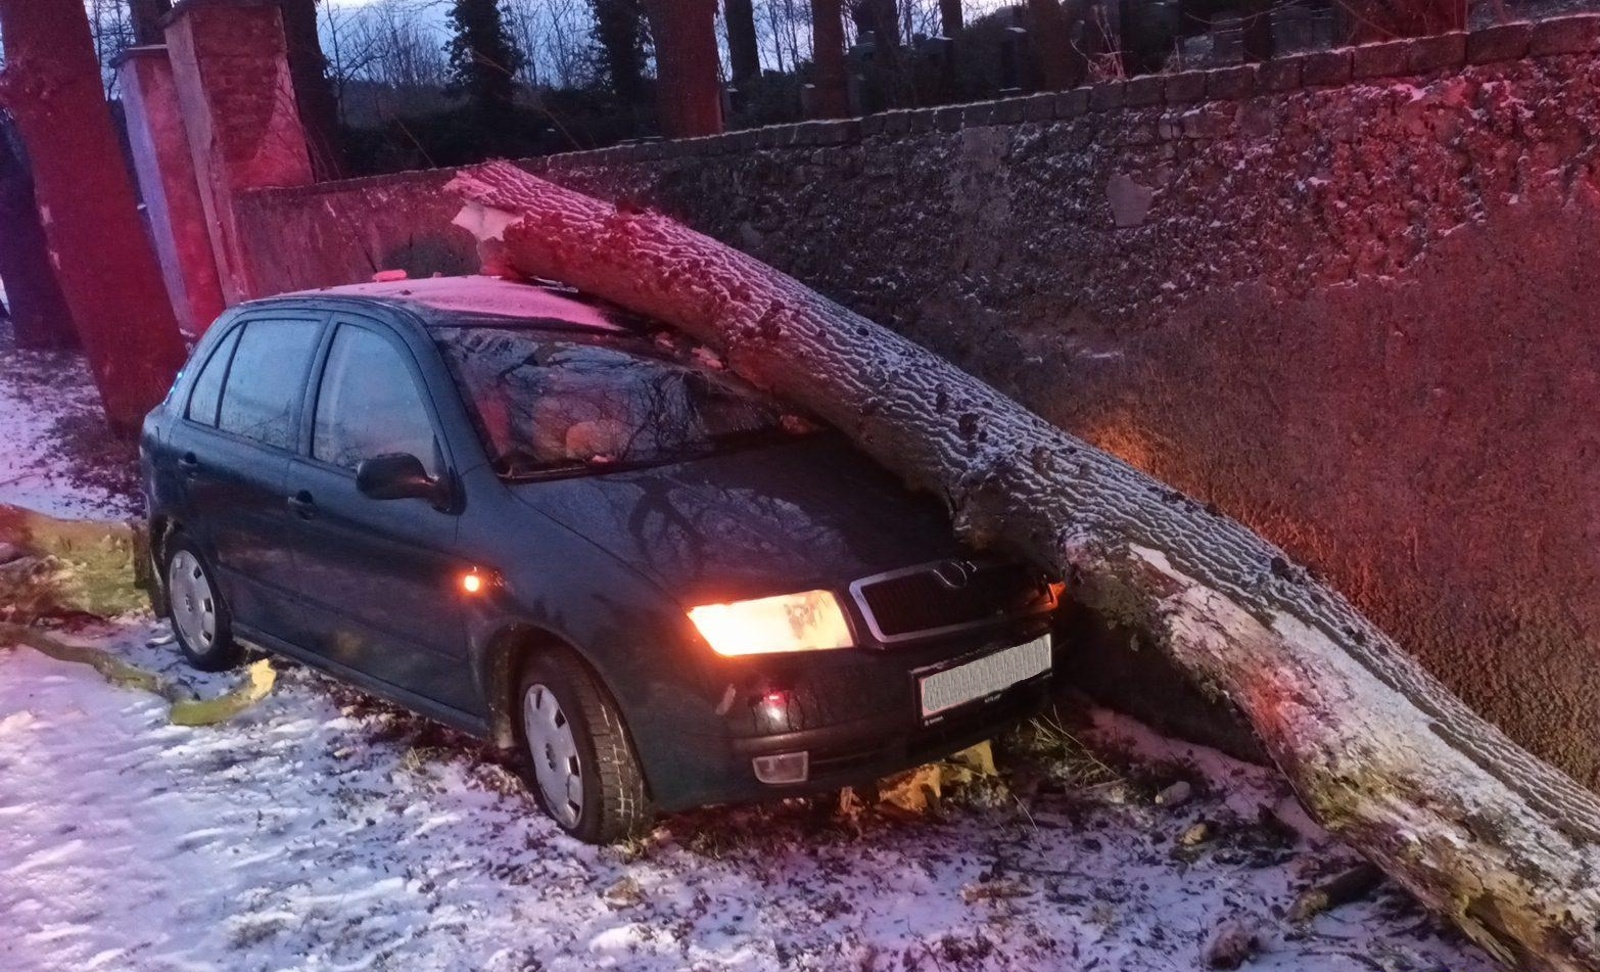 049-Starý ztrouchnivělý strom přeražený osobním autem u hřbitova na okraji Příbrami.jpg